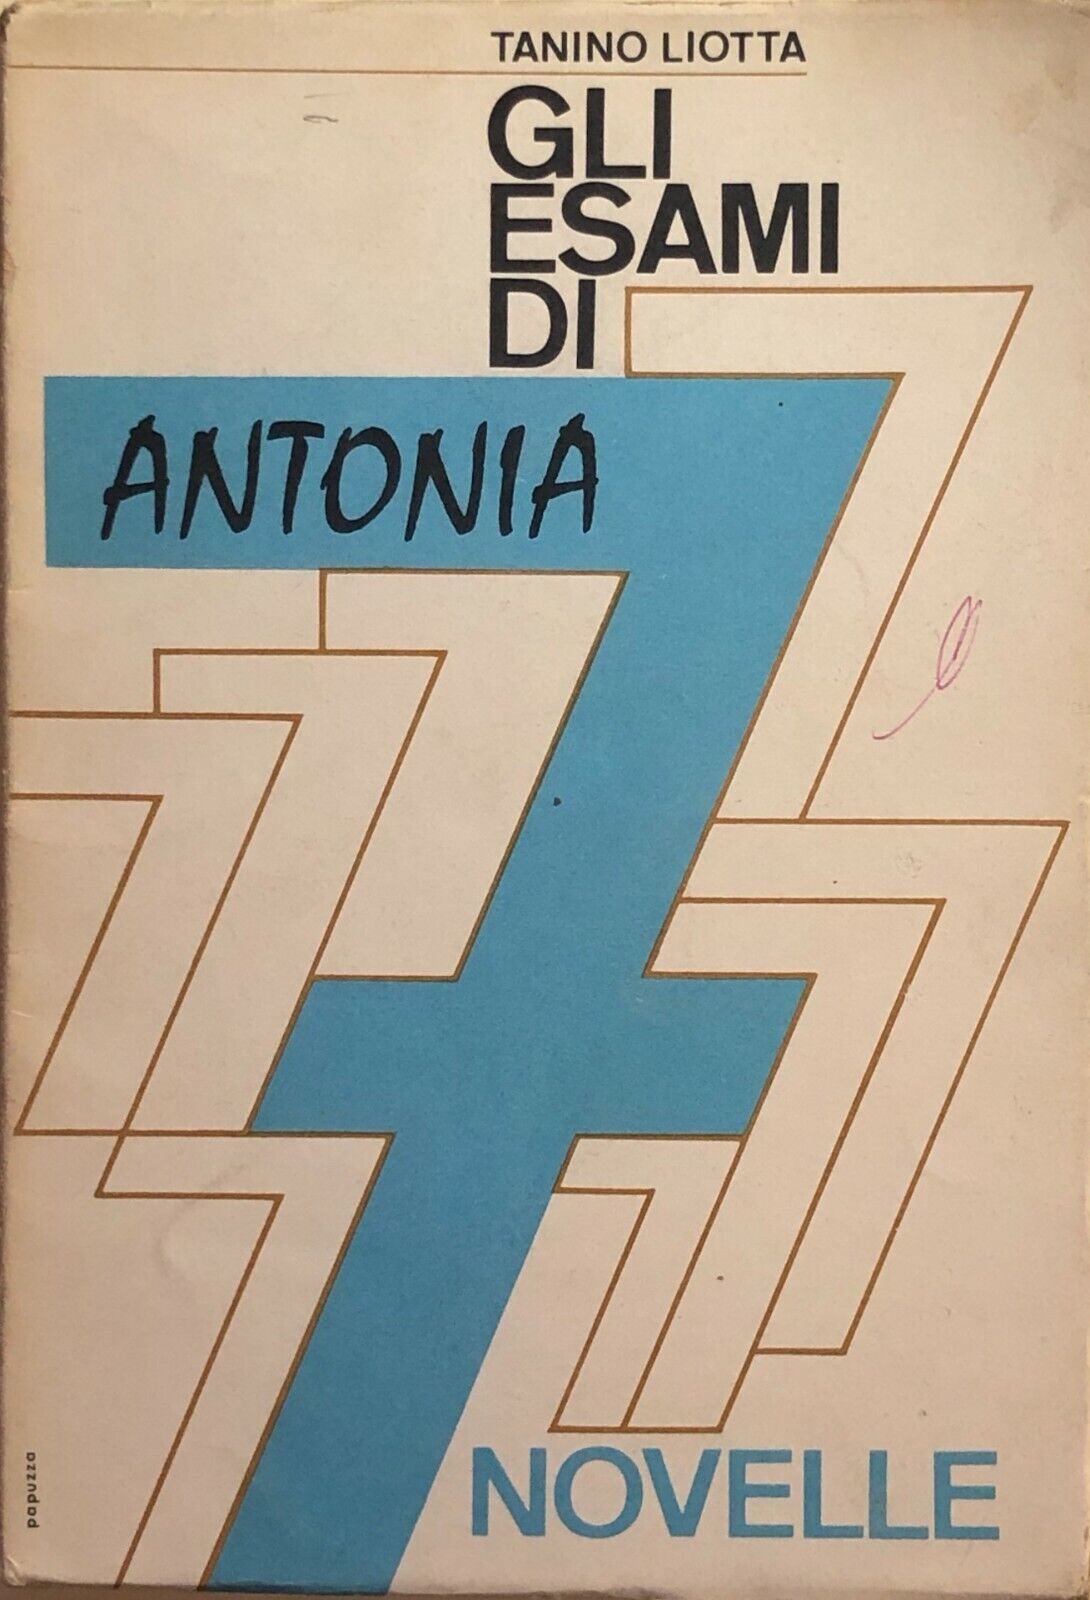 Gli esami di Antonia di Tanino Liotta, 1964, Priulla editore Palermo